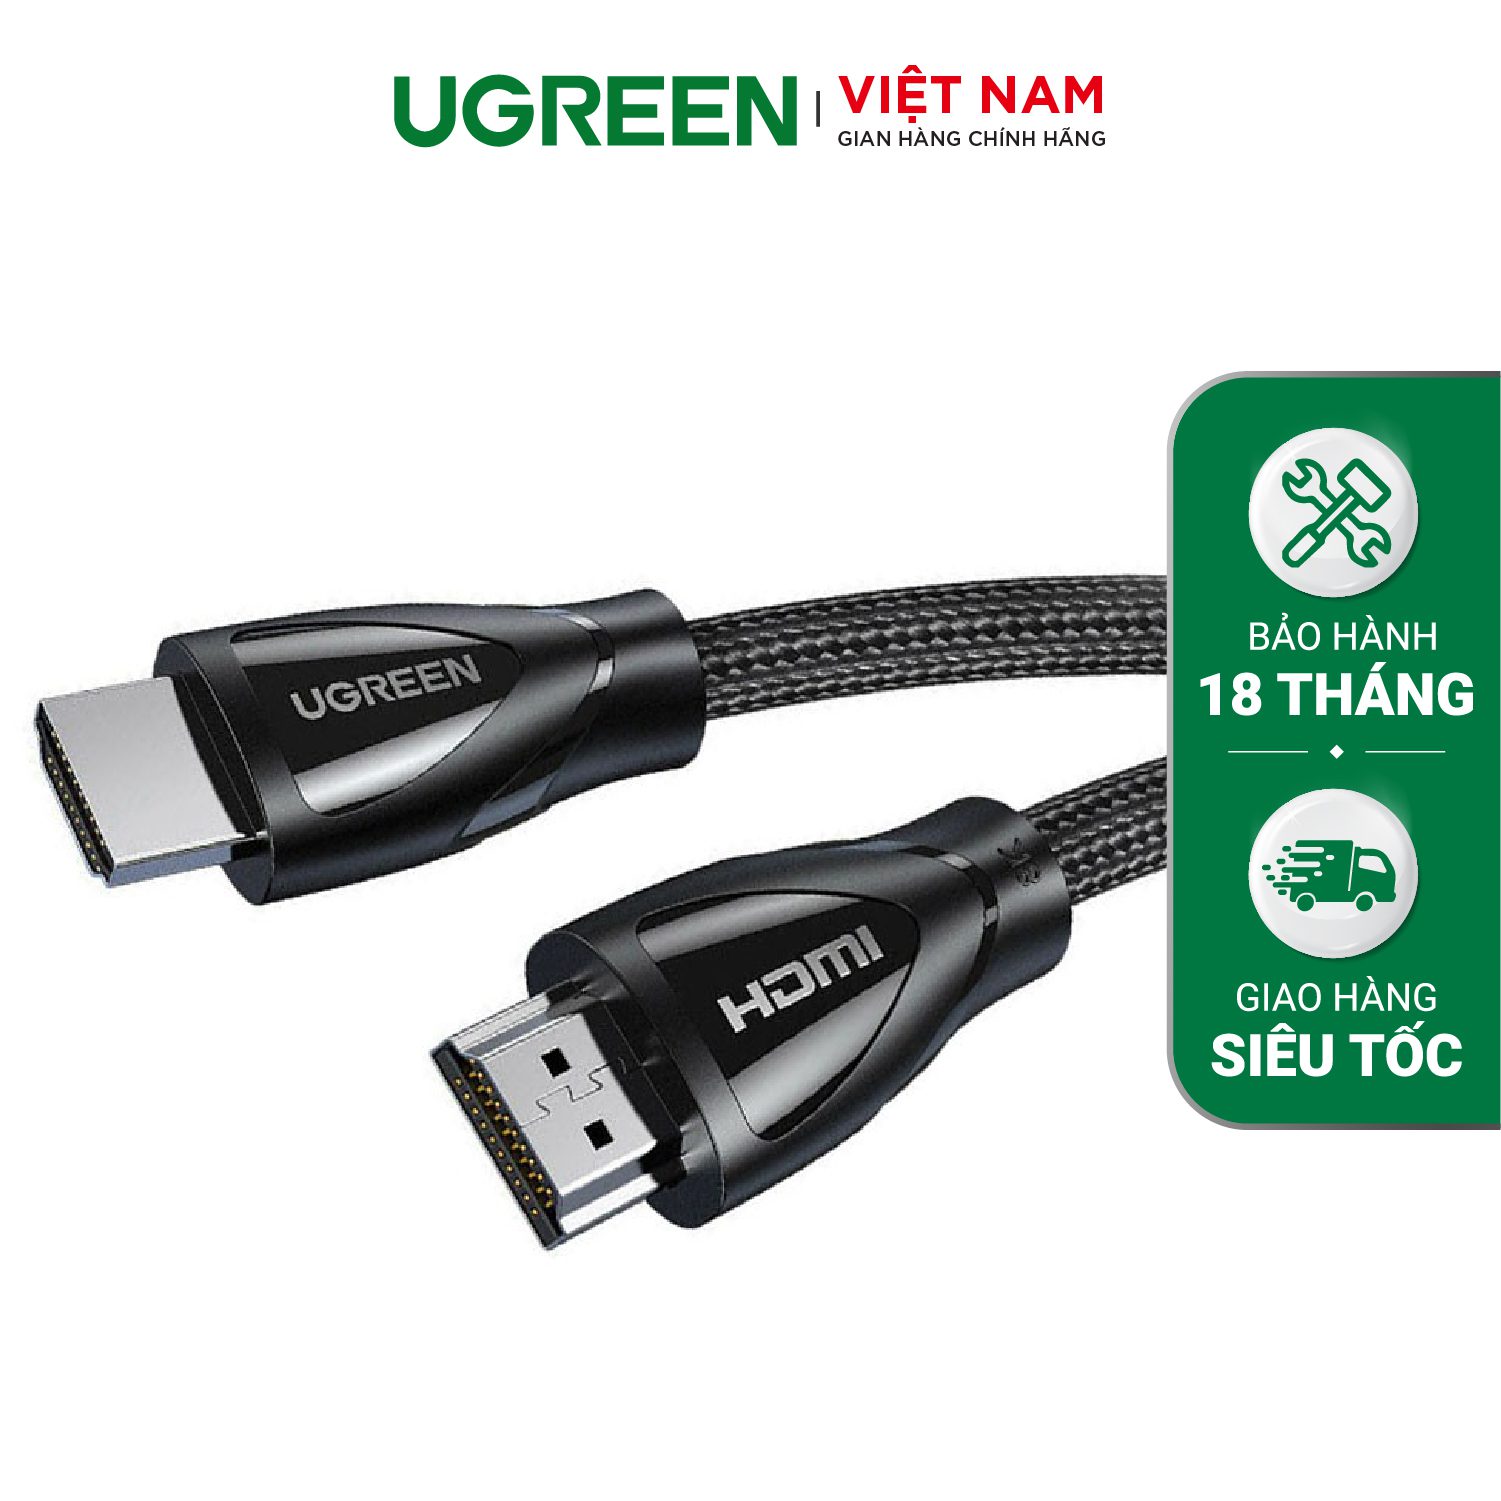 Cáp HDMI 2.1 UGREEN HD140 Hỗ trợ phân giải 8K/60Hz - Truyền tải tín hiệu không suy hao, Vỏ bện bông chống rối, độ bền cso – Ugreen Việt Nam